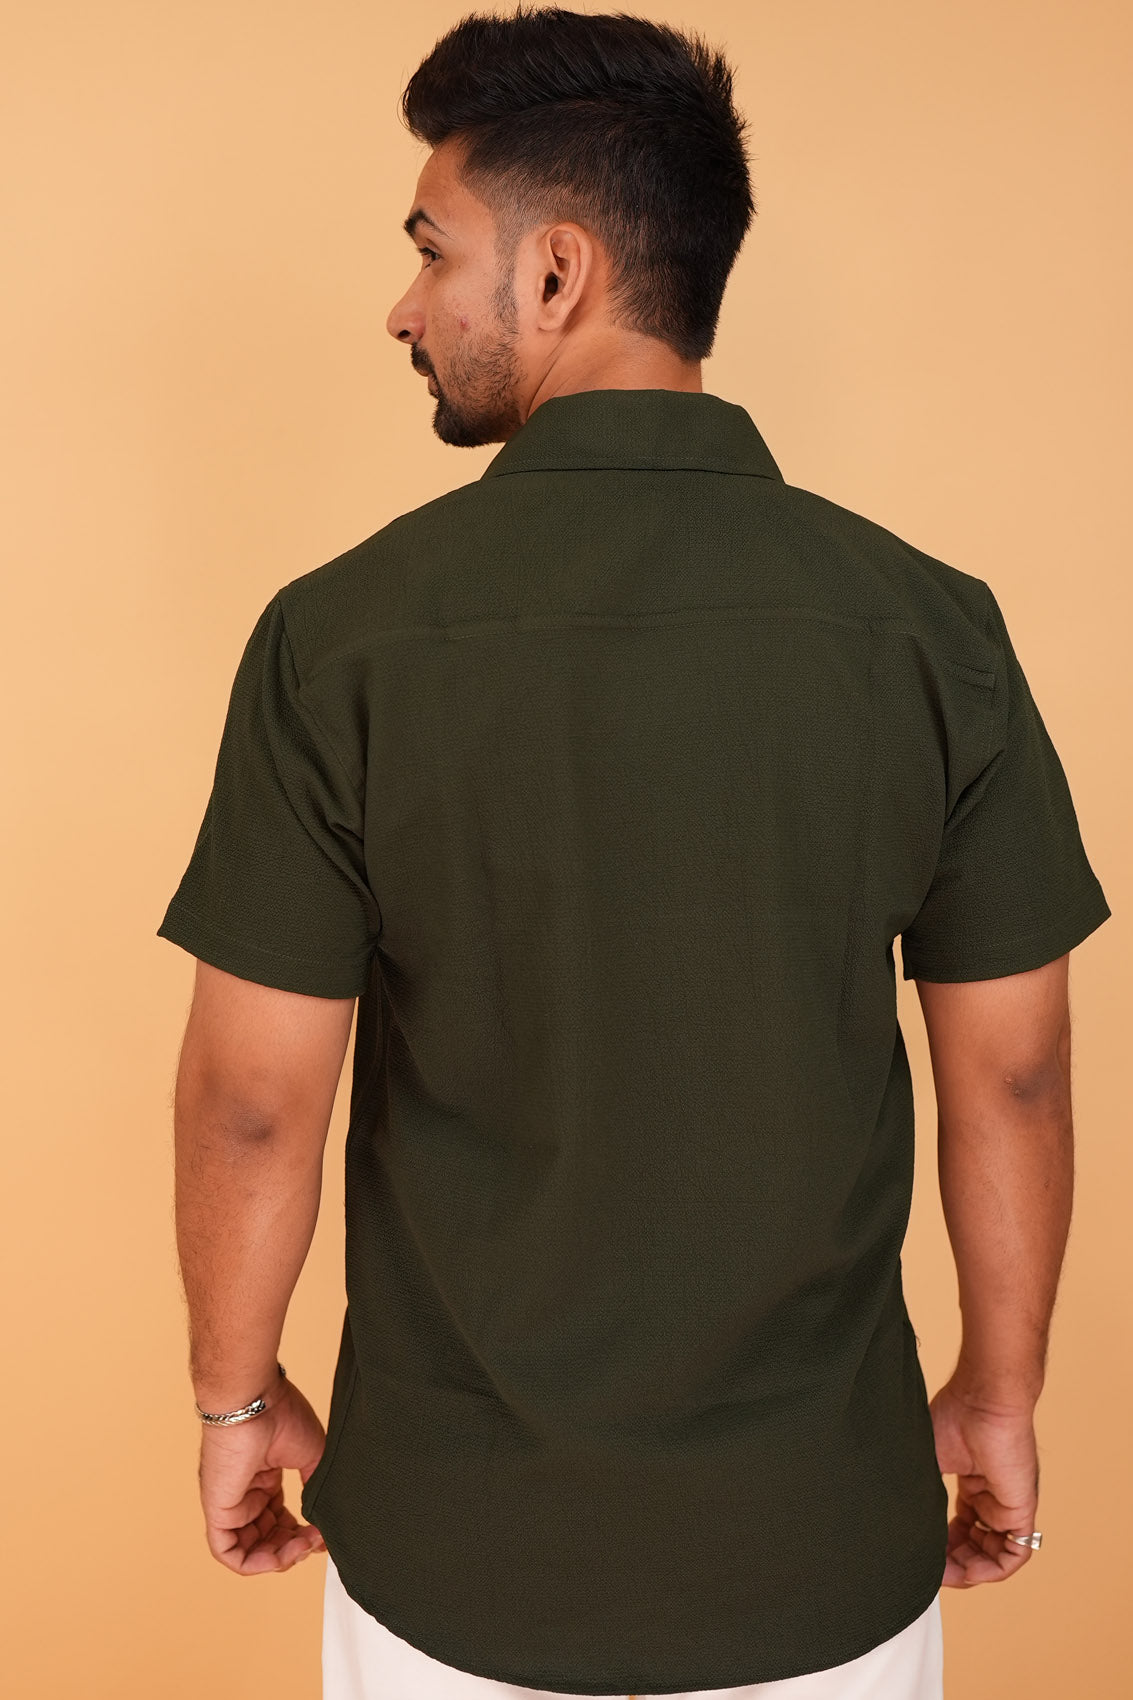 Vintage Olive Green Half-Sleeve Shirt